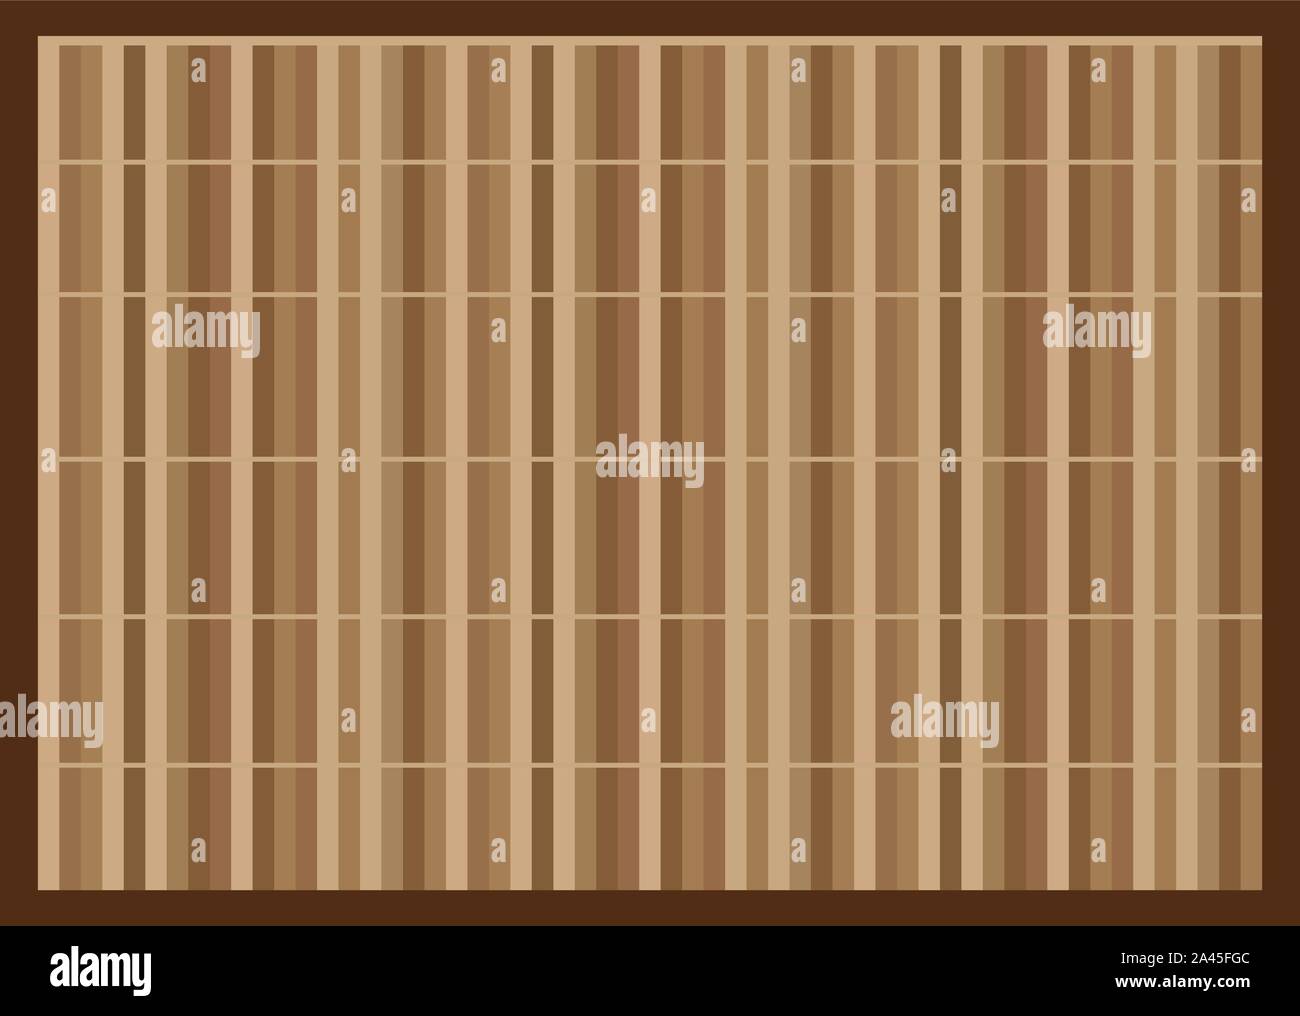 Tapis de bambou. Tableau asiatique est faite de bambou tressé. Japonais,  Chinois table cloth. Réglage de la table de repas. Eco friendly place  naturel mat.Vector Image Vectorielle Stock - Alamy